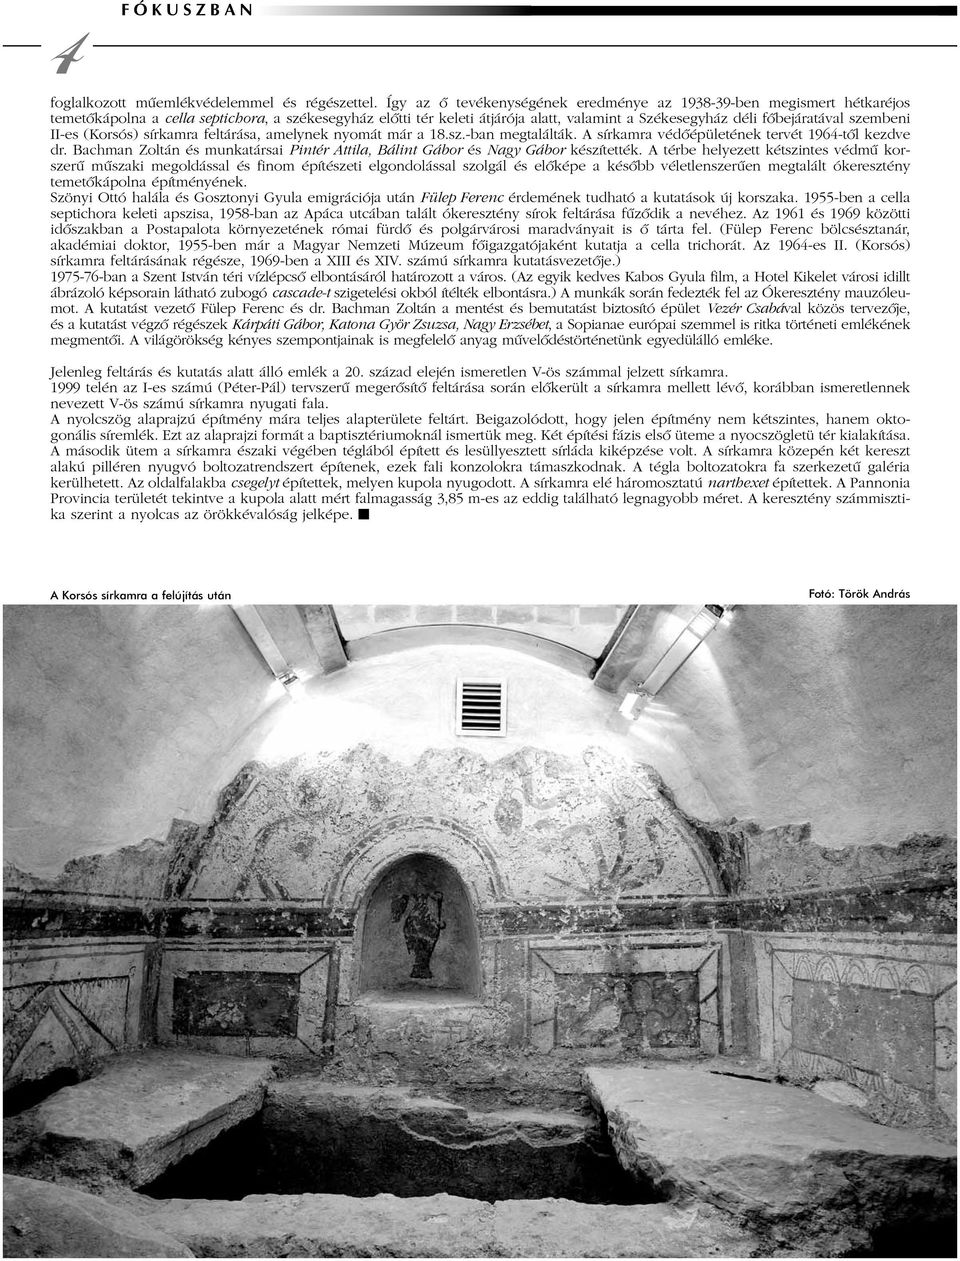 szembeni II-es (Korsós) sírkamra feltárása, amelynek nyomát már a 18.sz.-ban megtalálták. A sírkamra védõépületének tervét 1964-tõl kezdve dr.